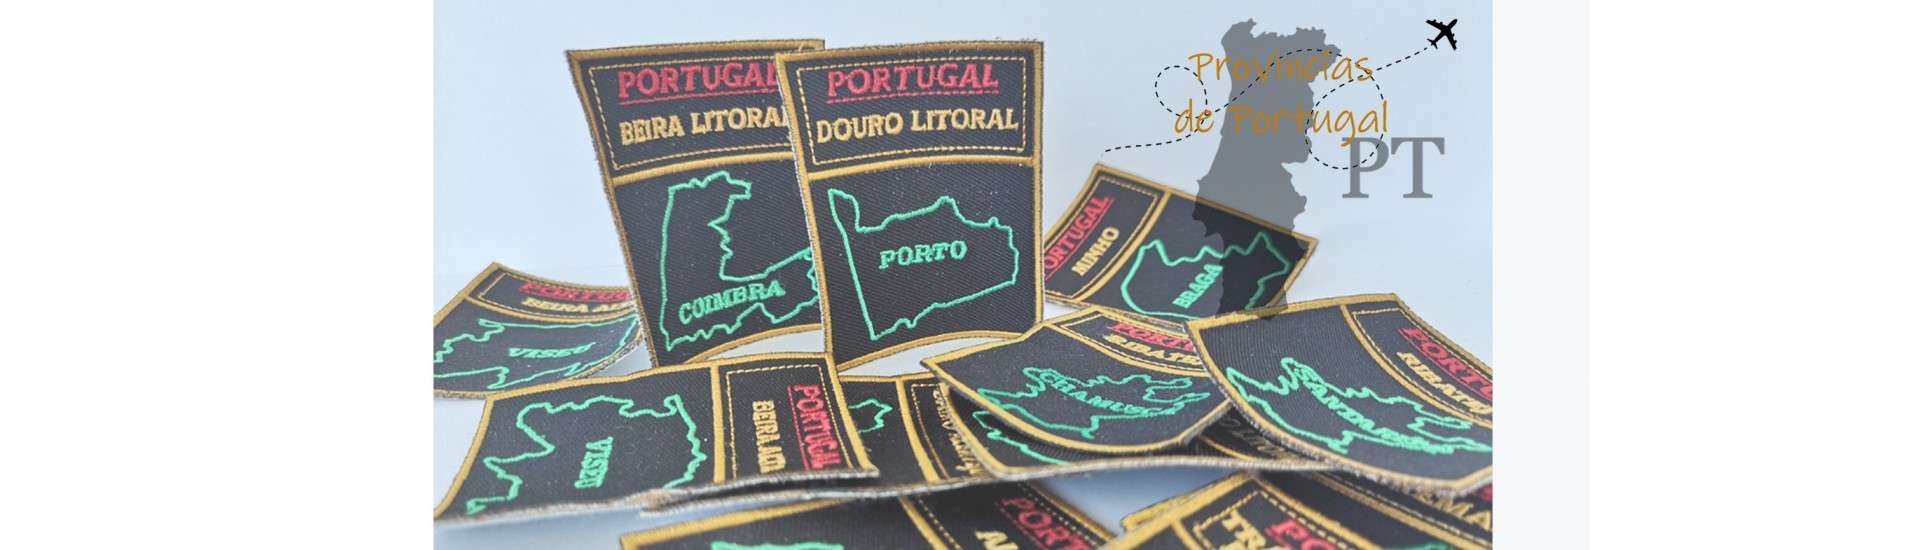 Emblemas Províncias de Portugal